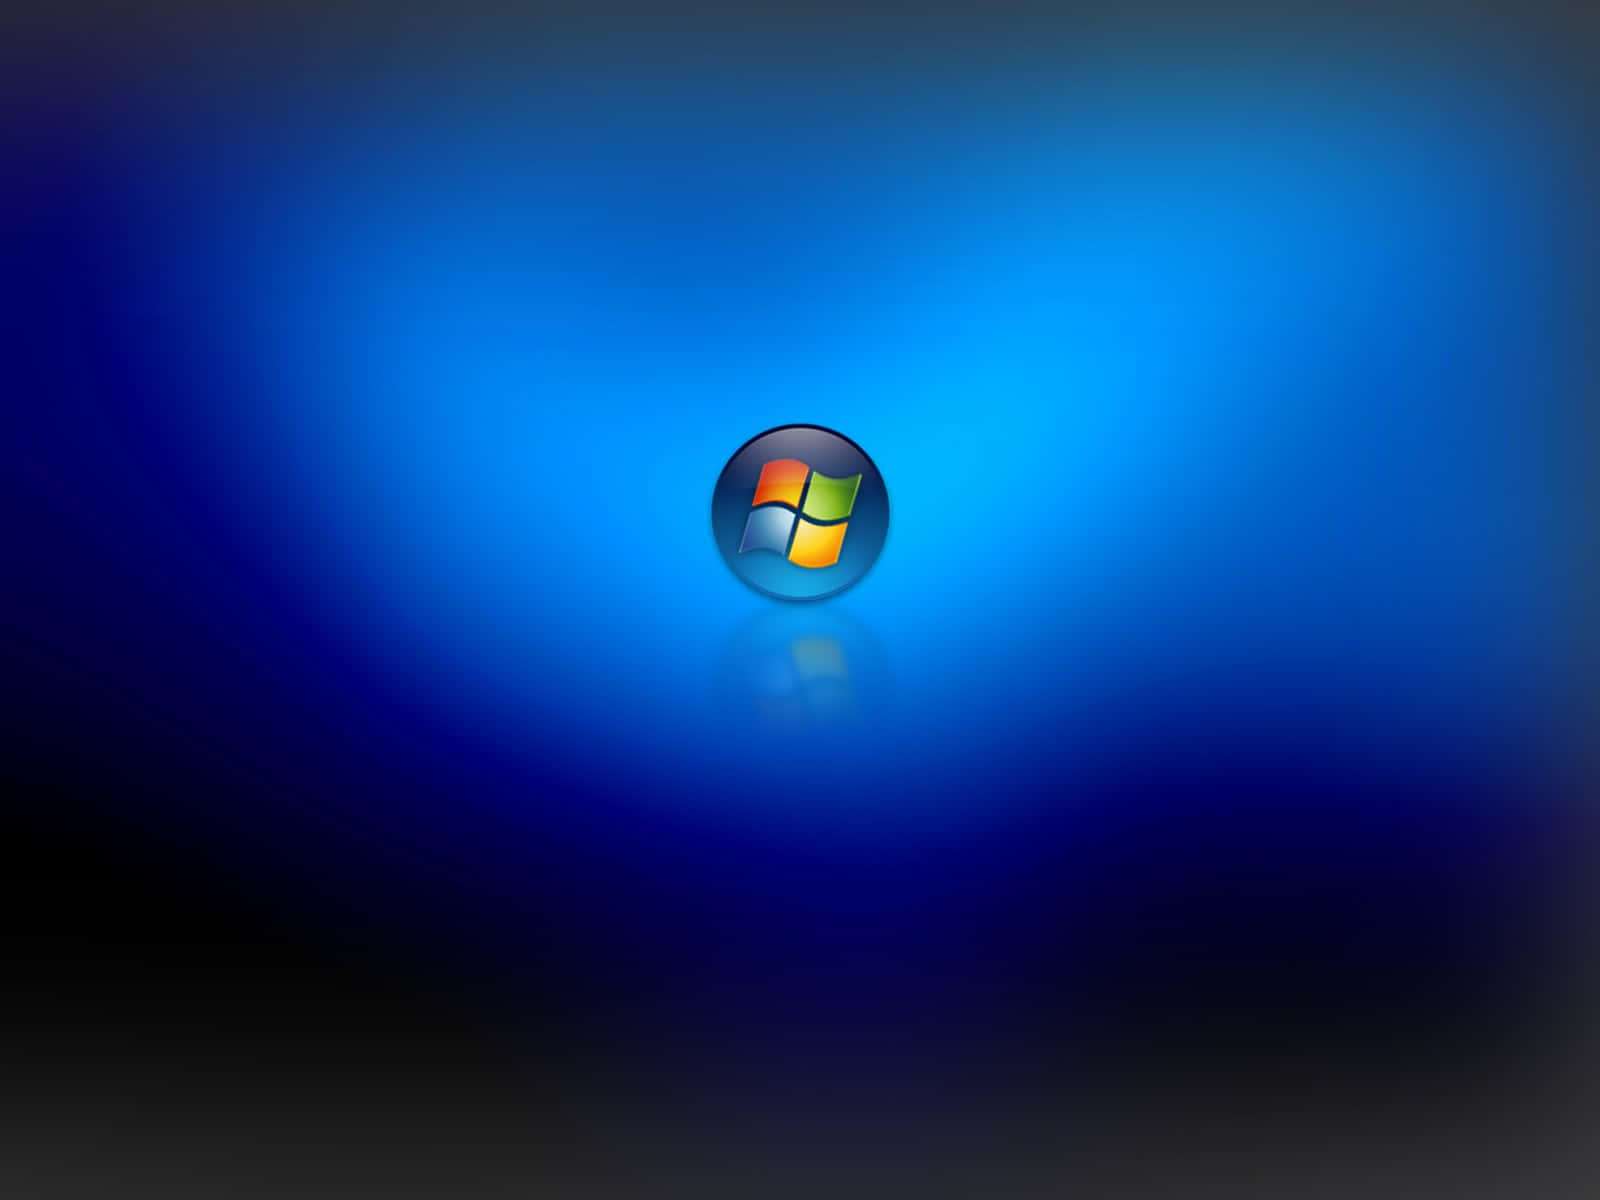 Windows7-logotyp På En Blå Bakgrund